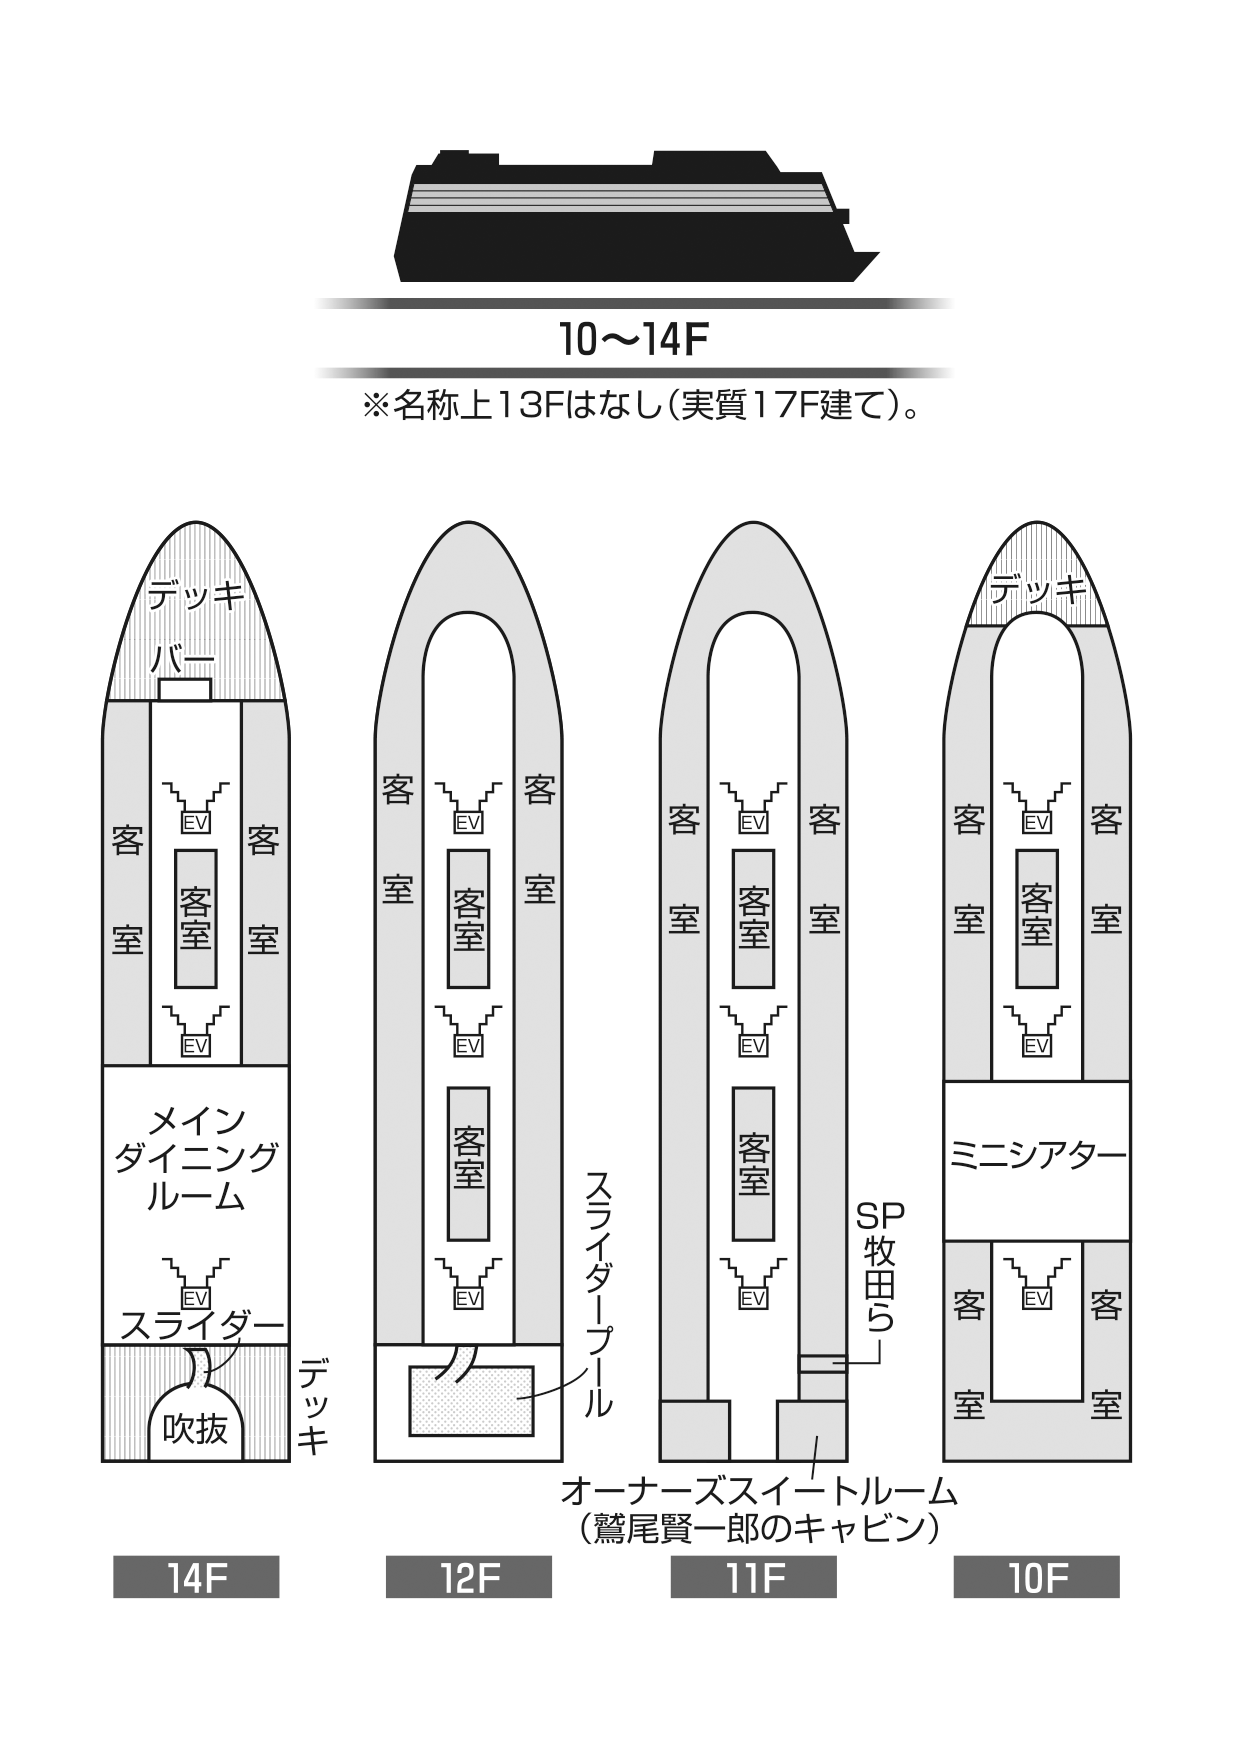 セレナ・オリンピア号船内図10〜14F